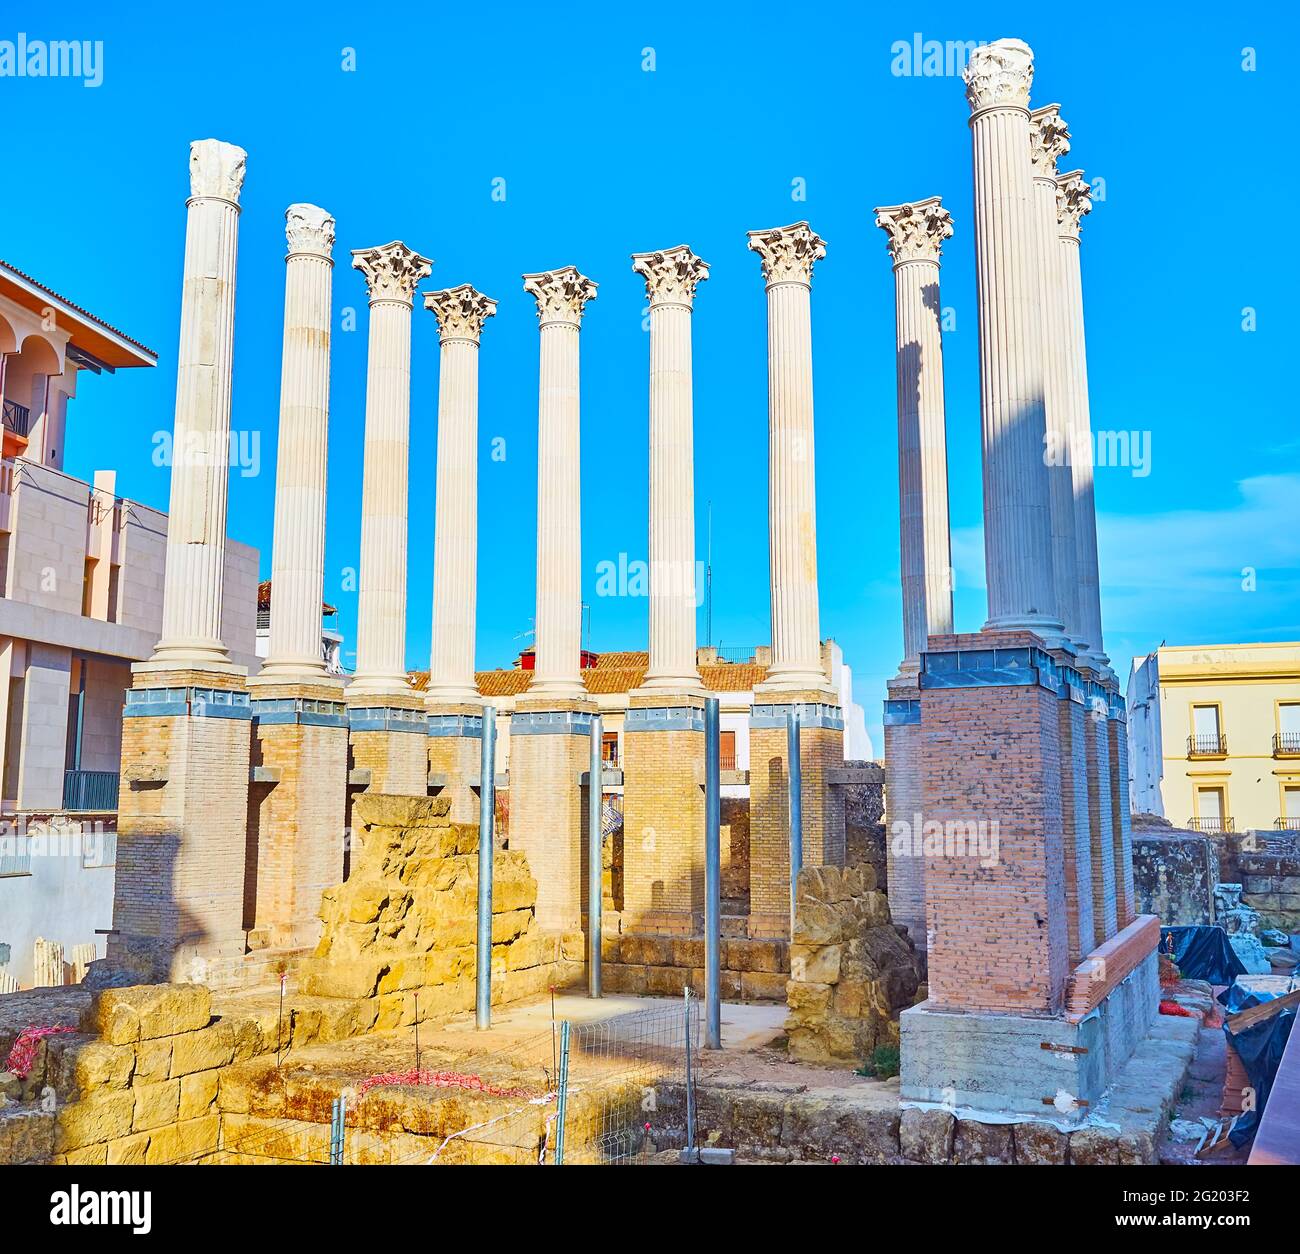 Die hohen weißen Säulen mit geschnitzten Kapitellen sind Details des alten römischen Tempels in der Altstadt von Cordoba, Spanien erhalten Stockfoto